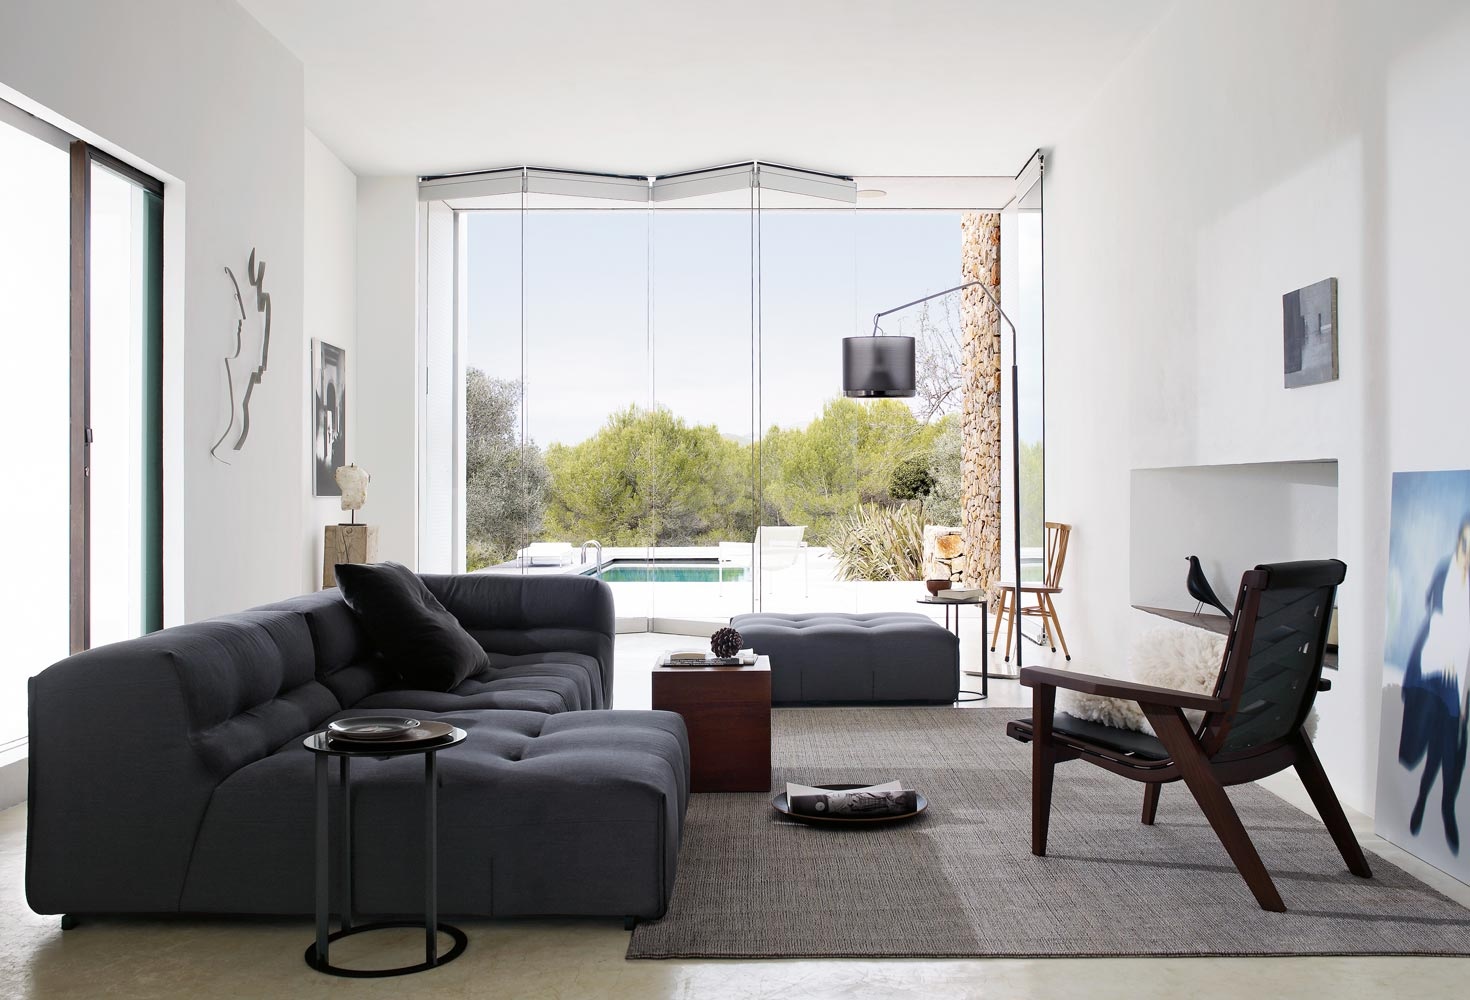 Home design living room furniture - House design plans - Home design living room furniture